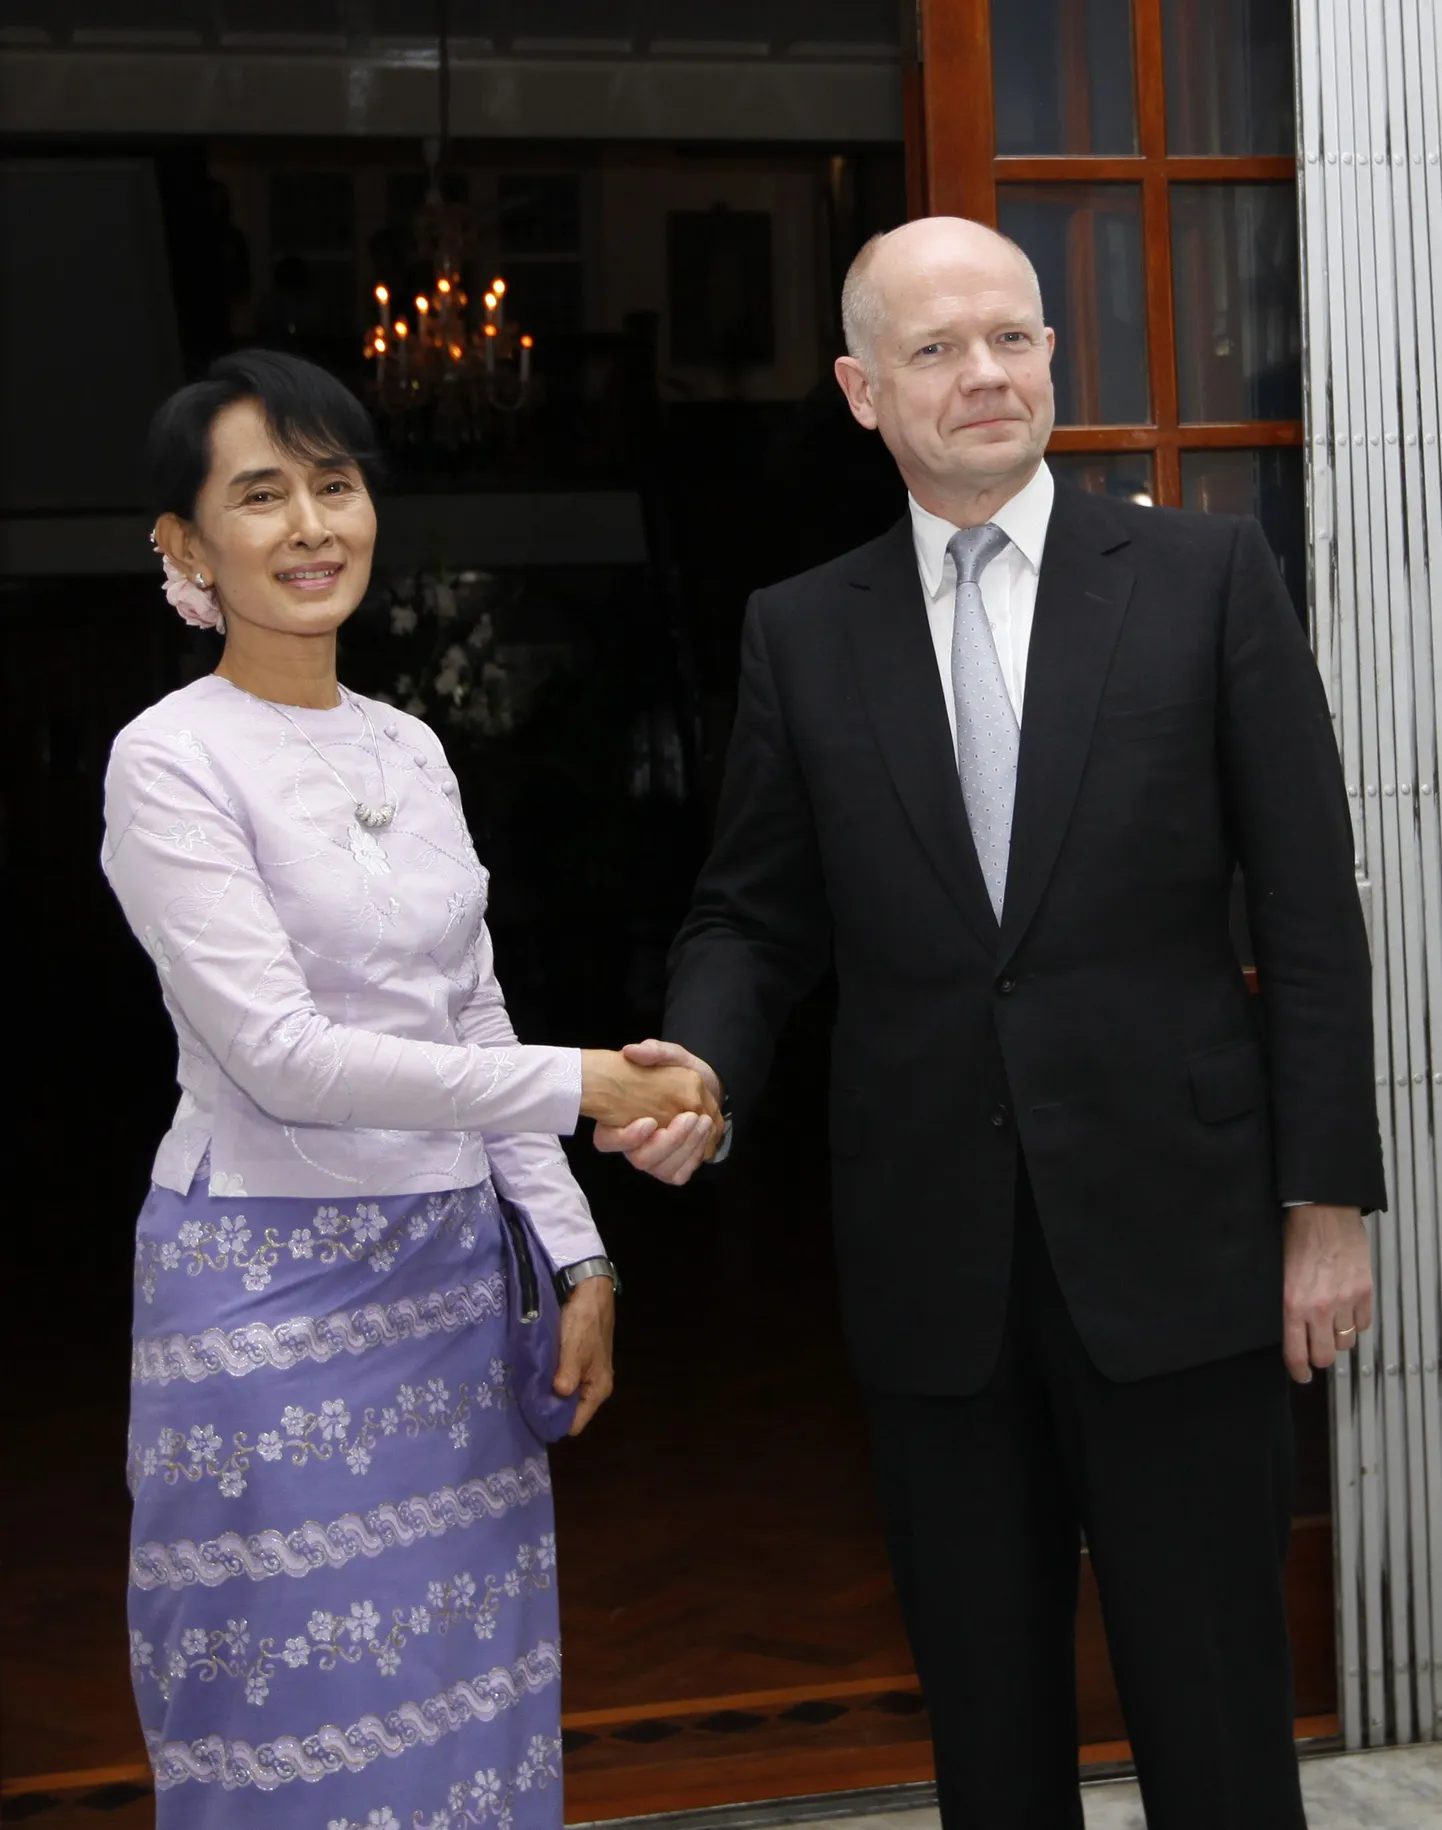 Briti välisminister William Hague ja Birma opositsioonijuht Aung San Suu Kyi